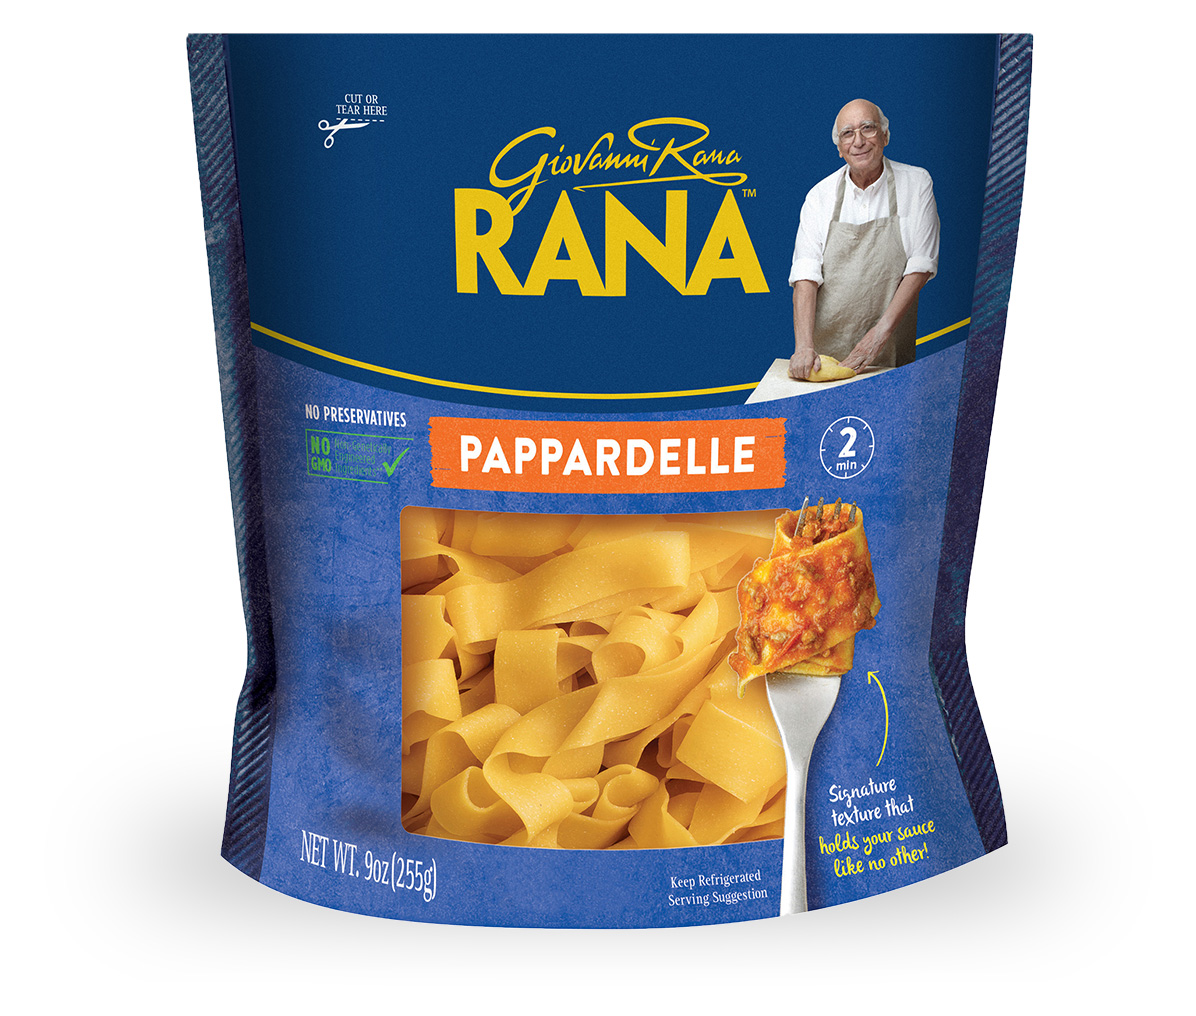 Pappardelle - Giovanni Rana